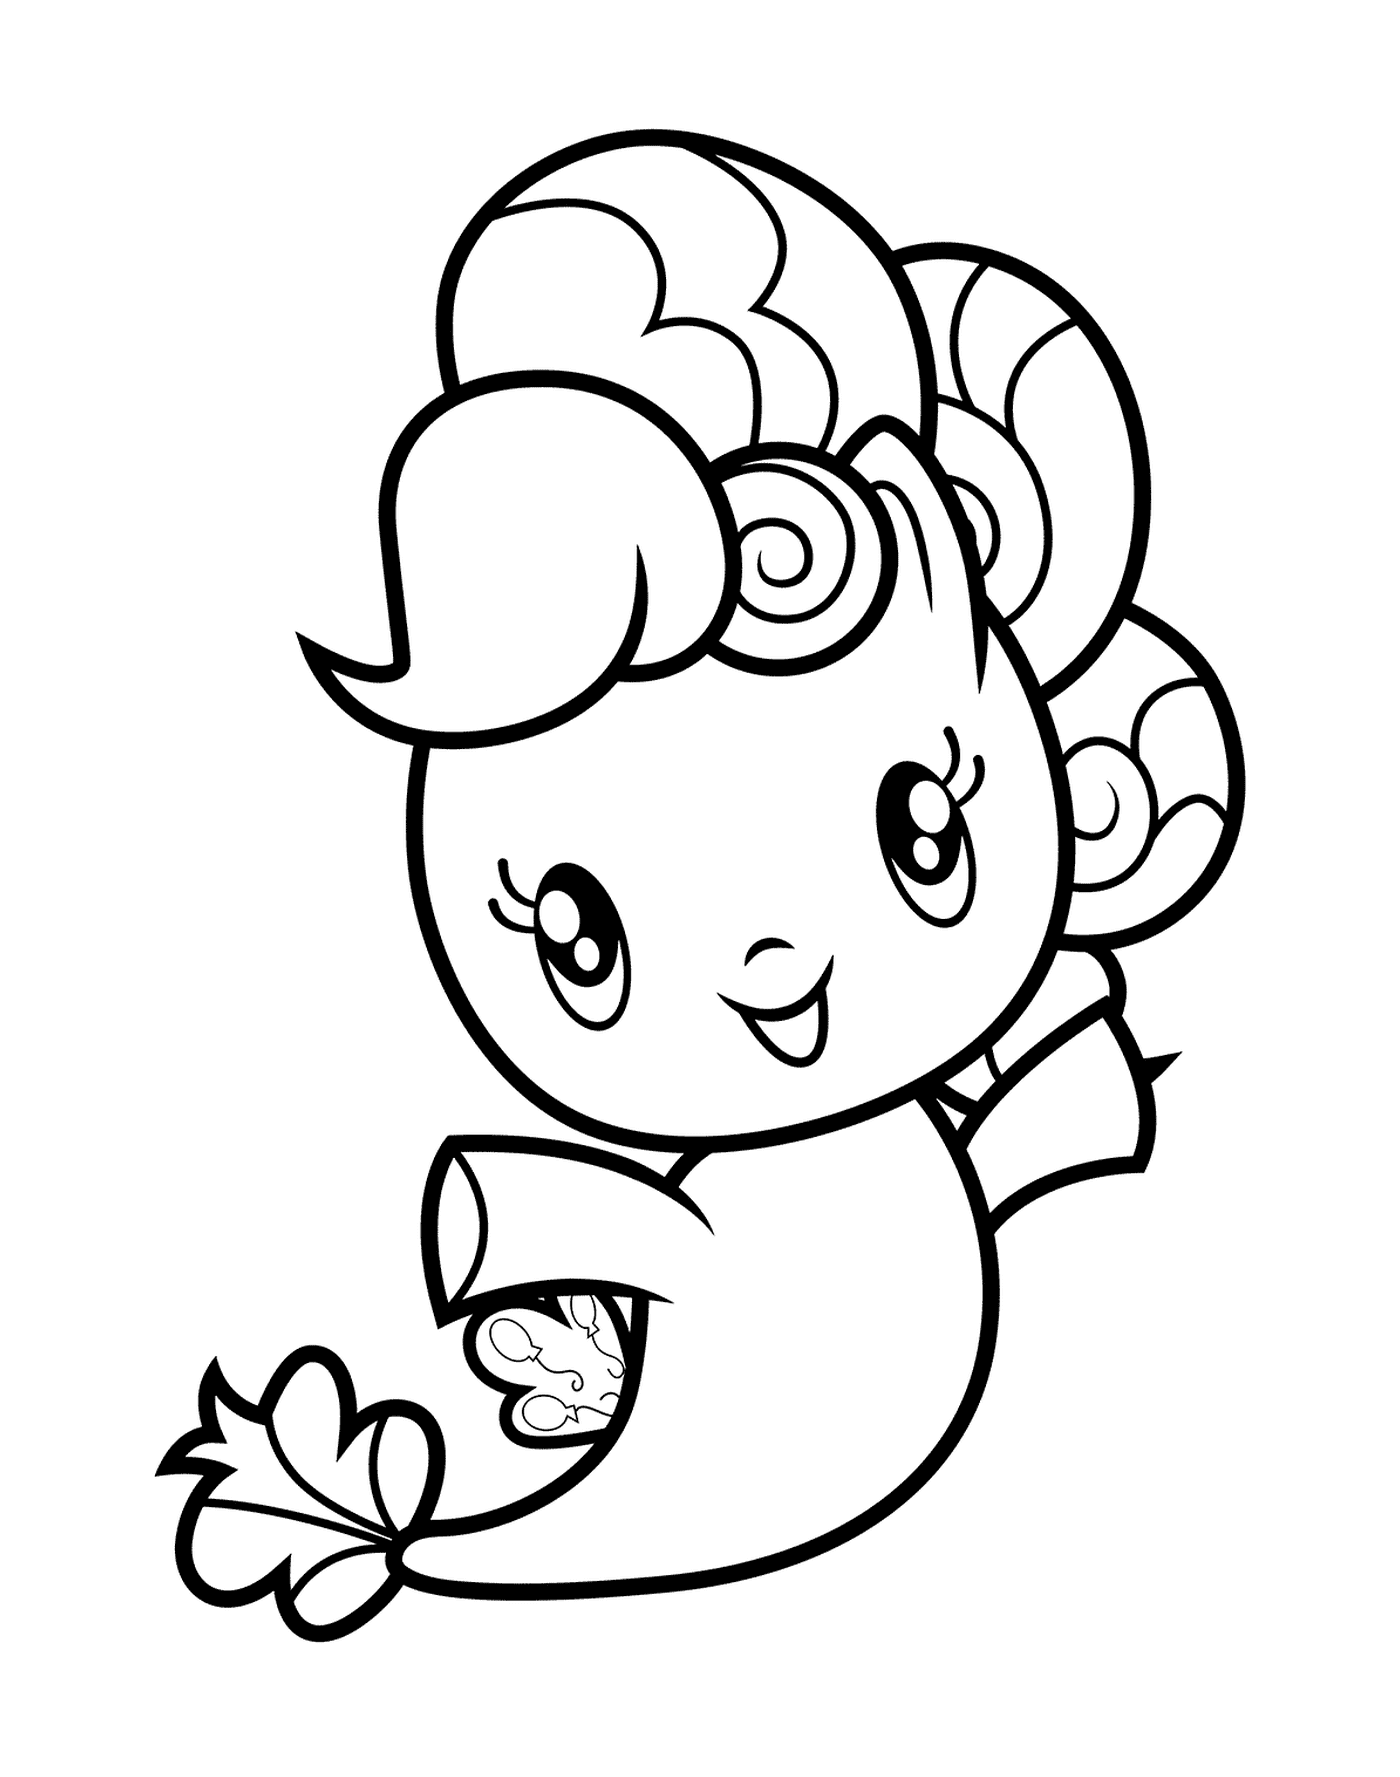  Pinkie Pie Pony de Mer Adorable que ofrece una flor 